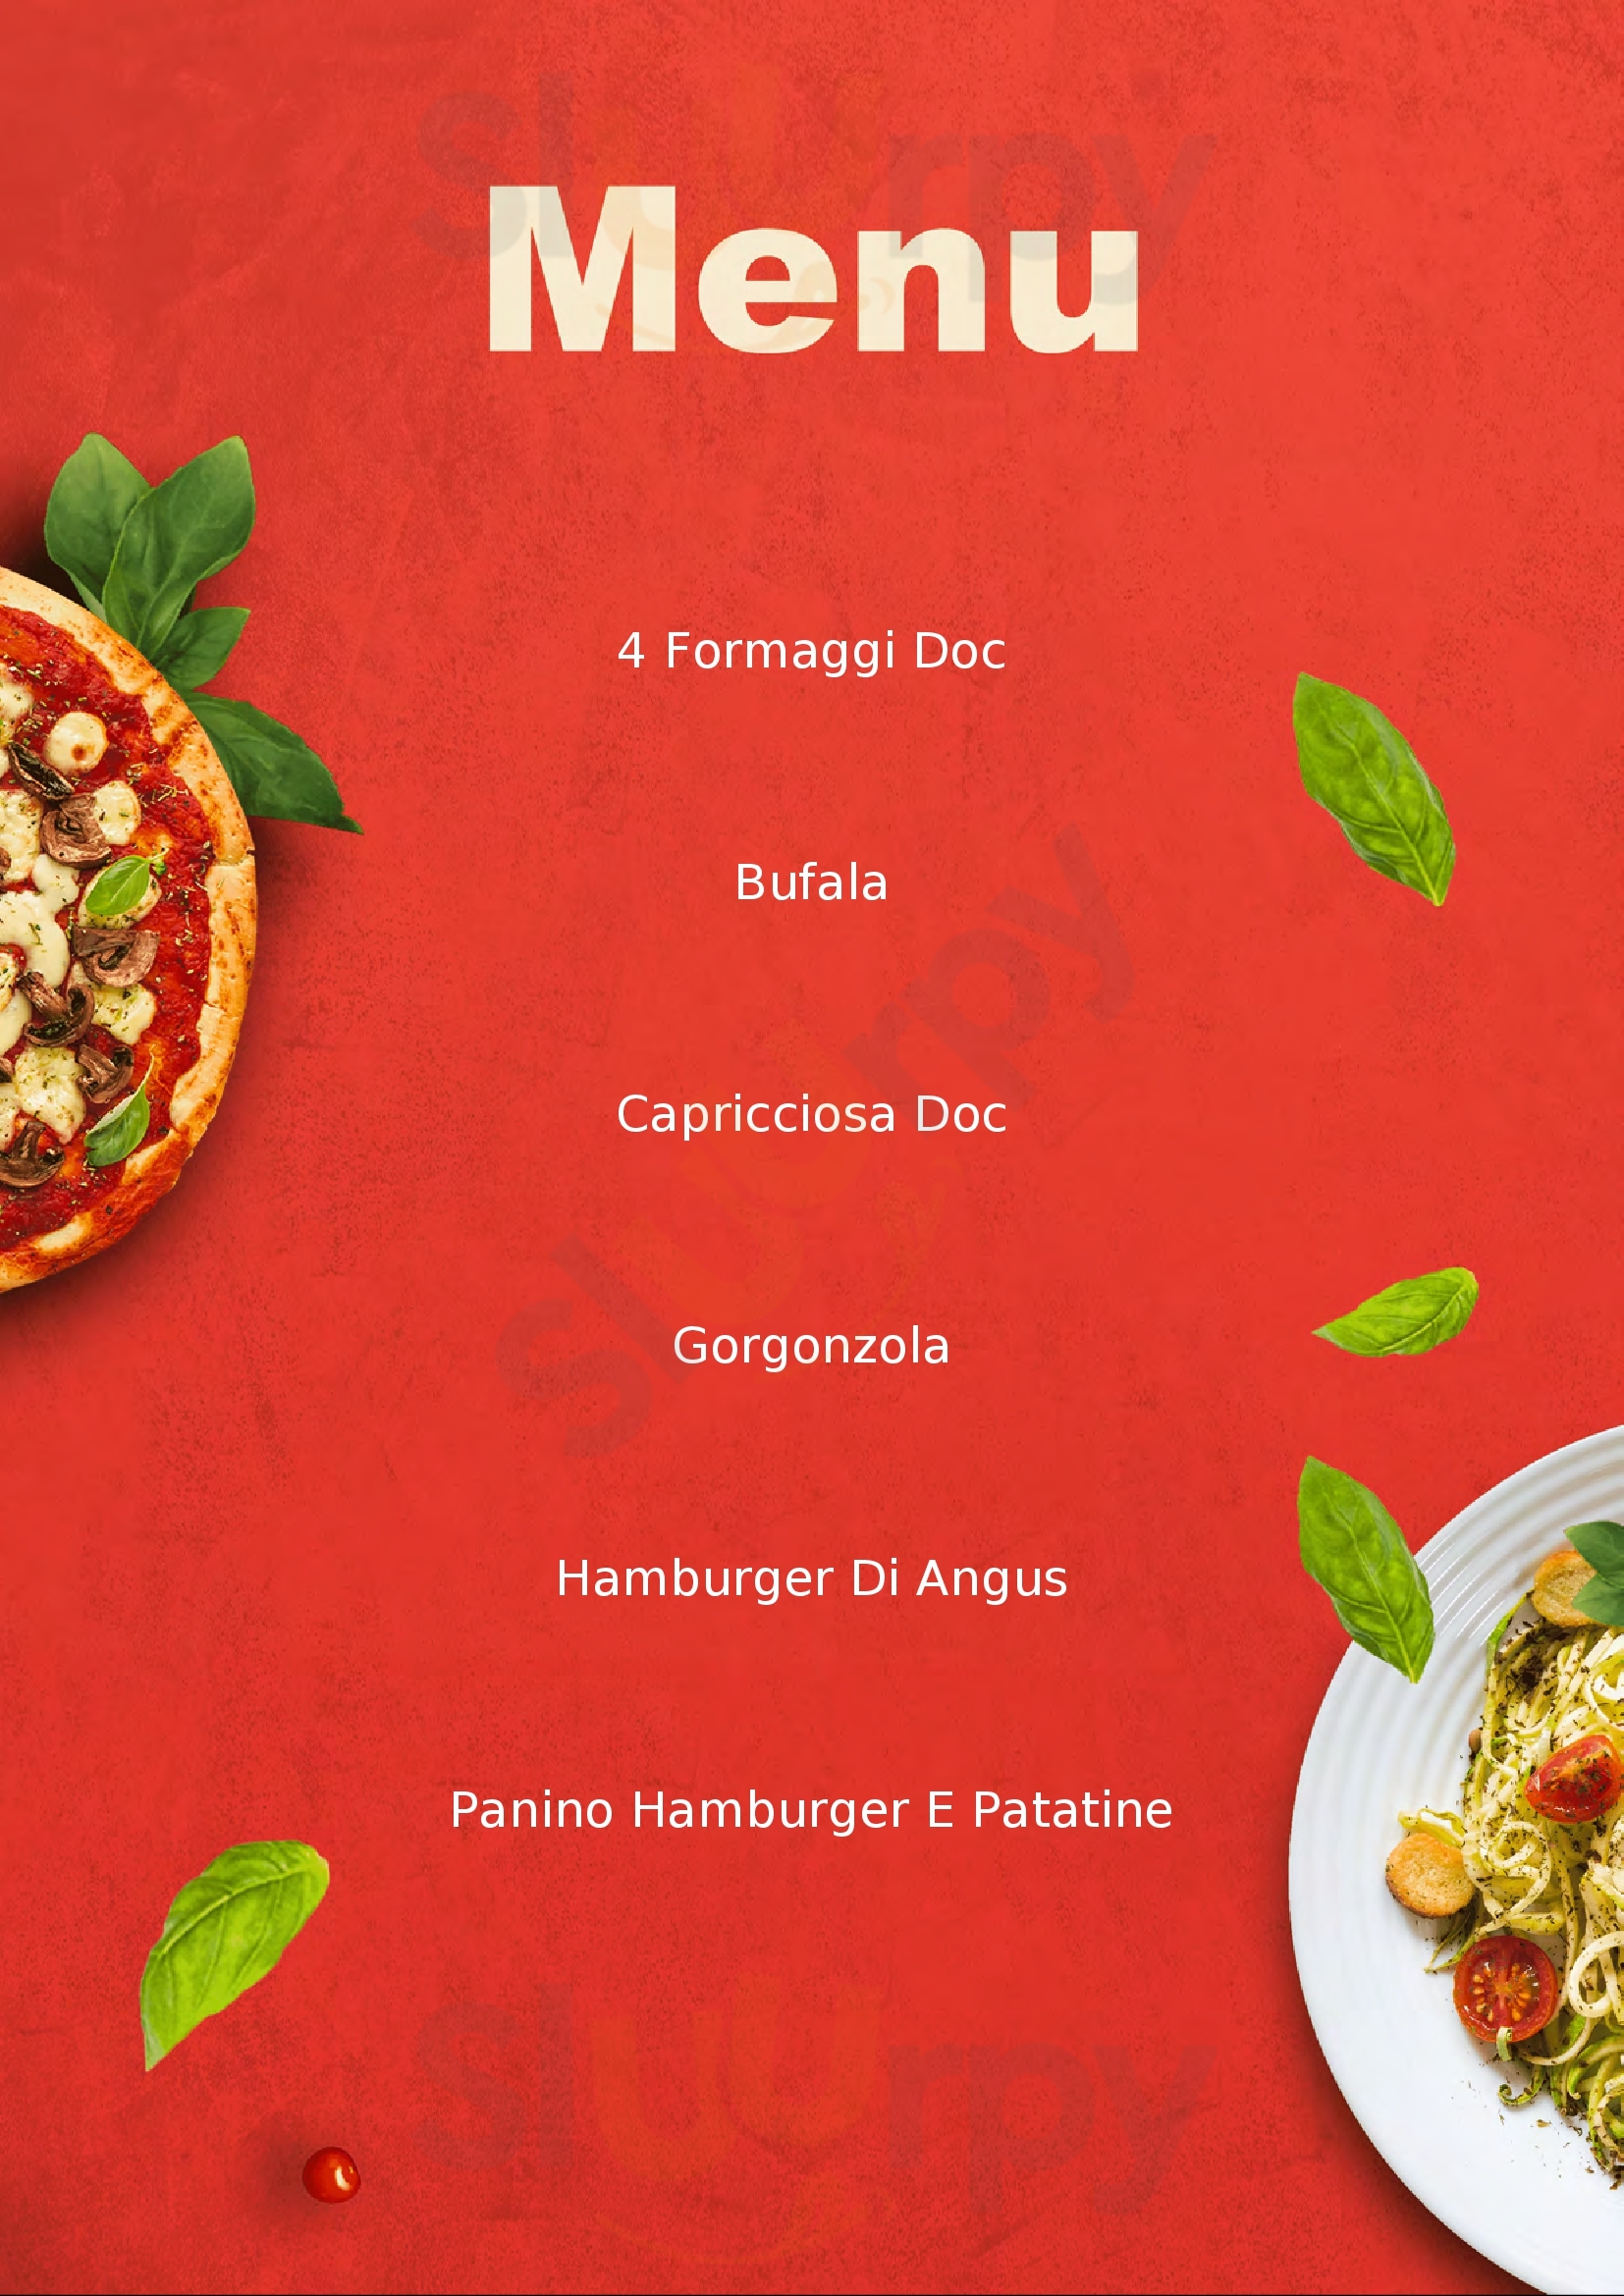 Pizzeria Braceria L'Alza Bandiera Monte San Biagio menù 1 pagina